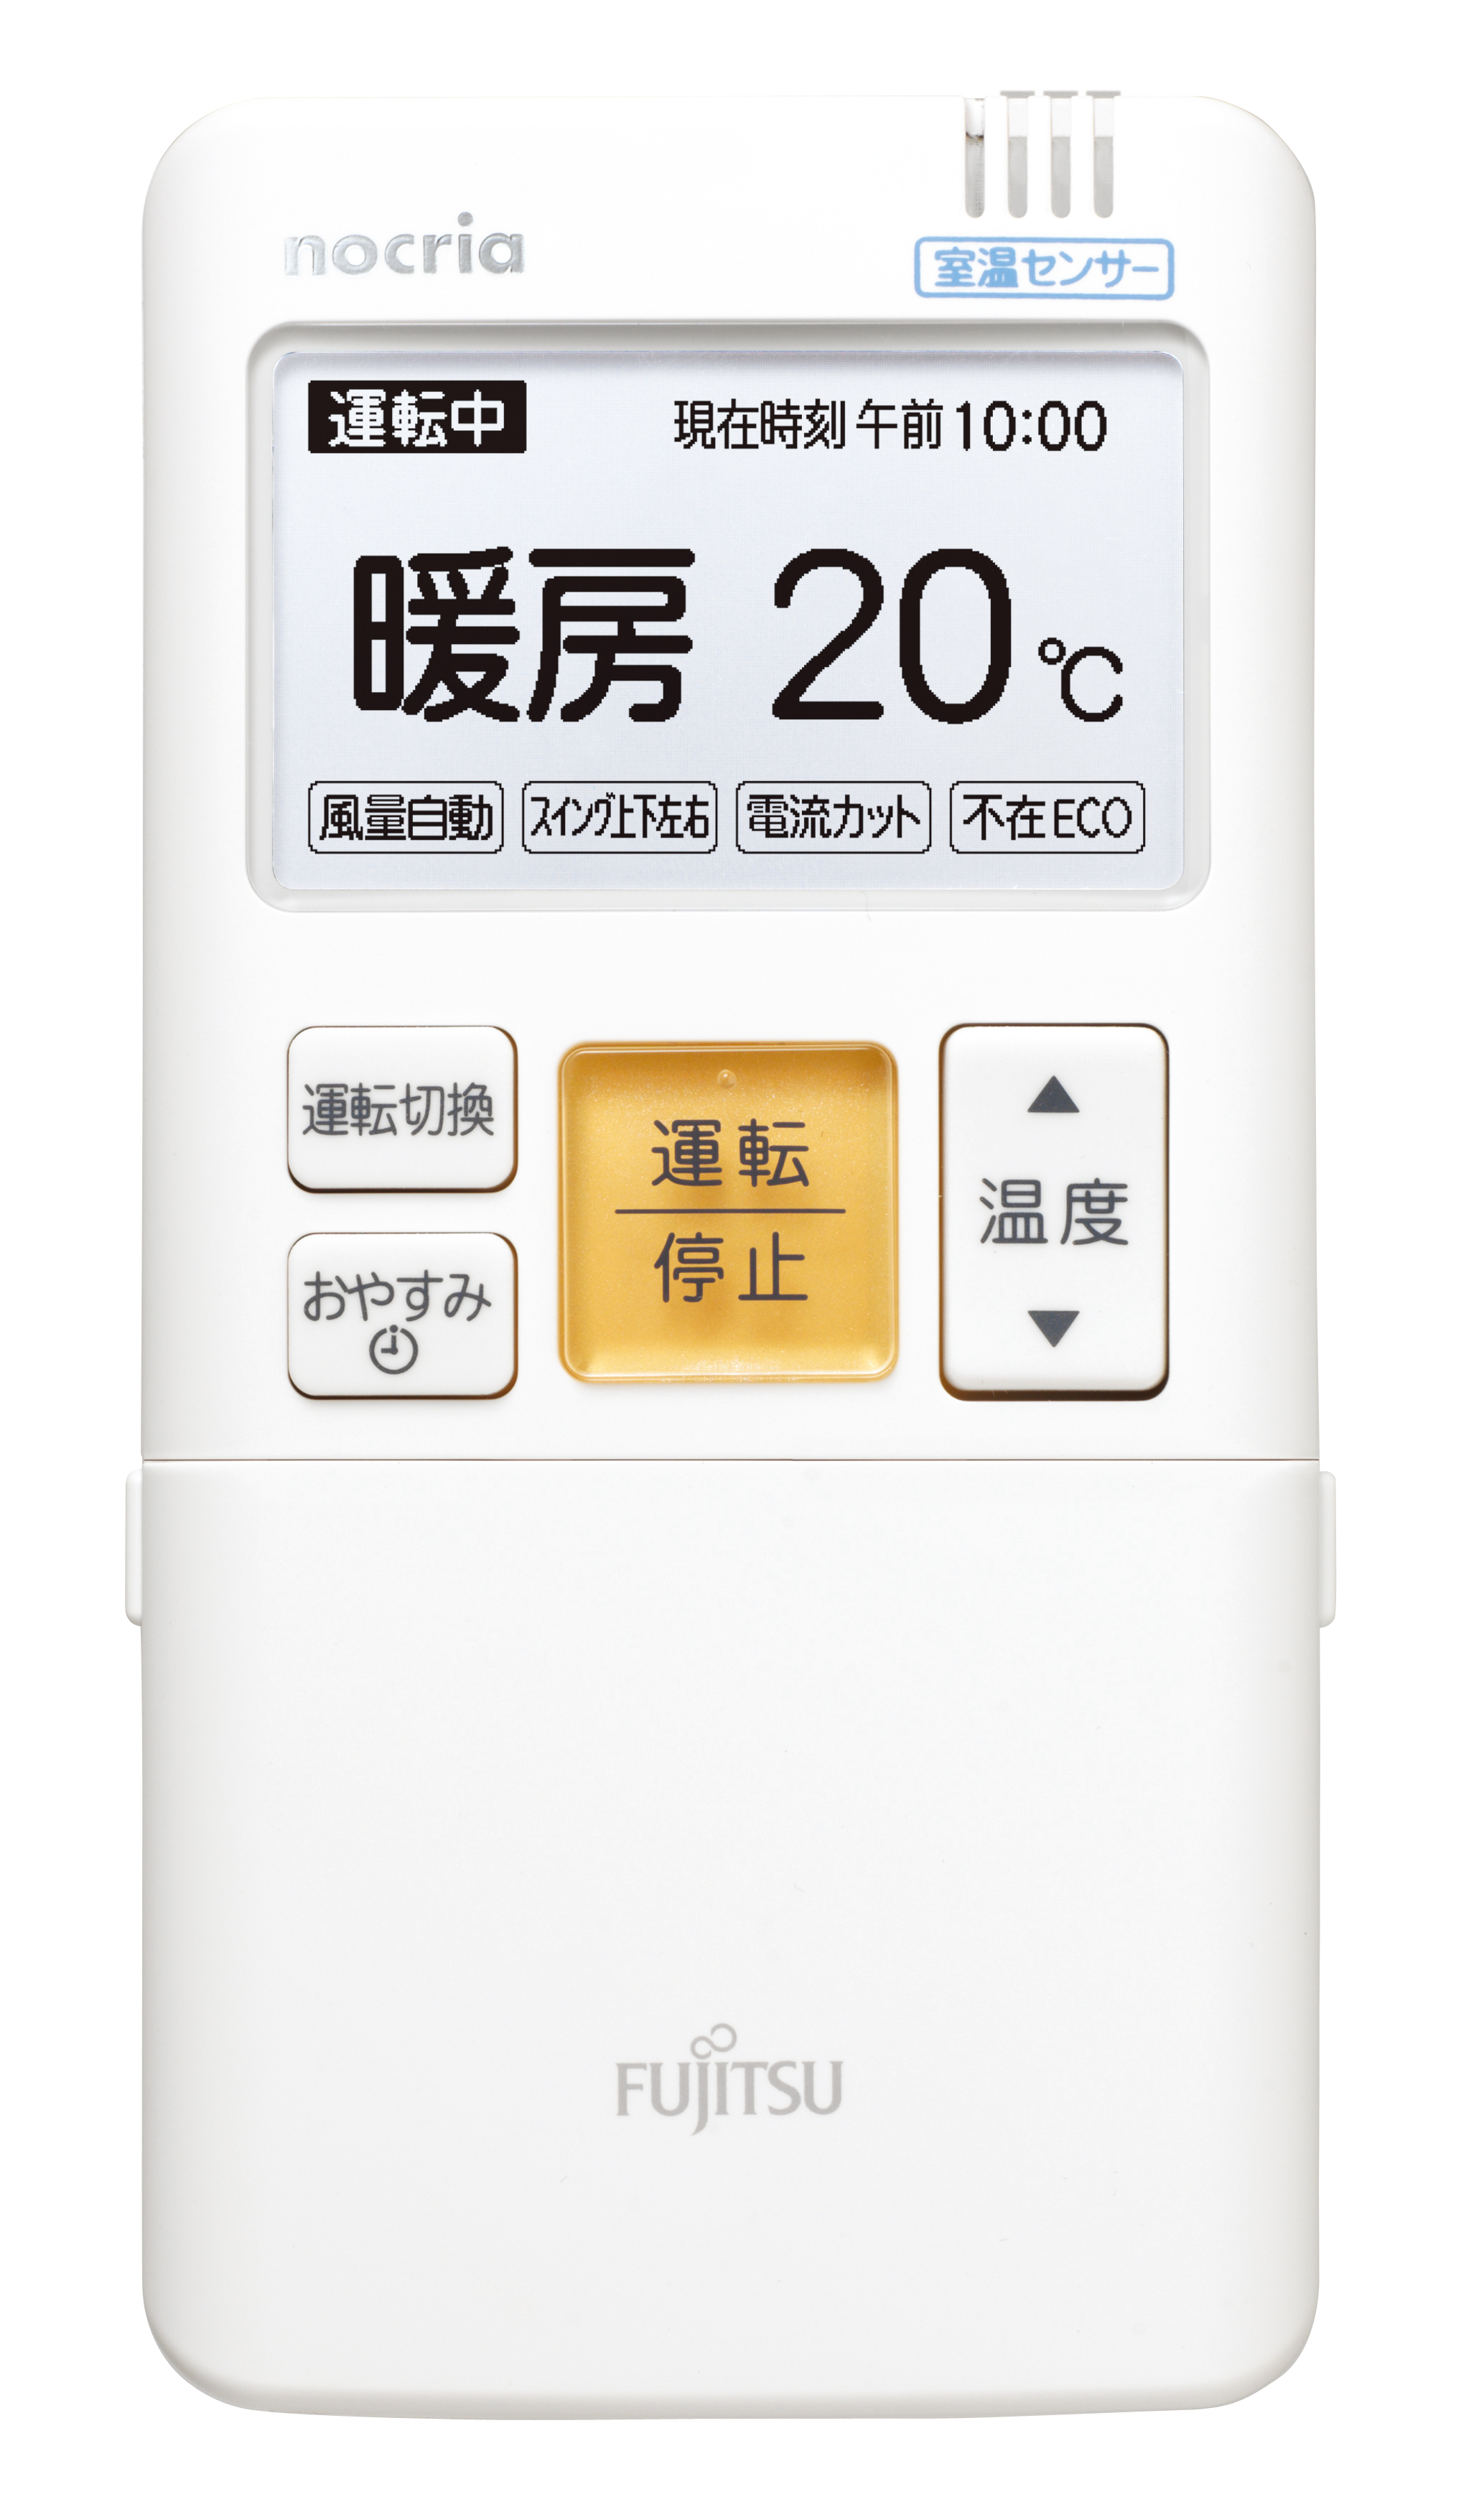 高機能ルームエアコン「nocria®」Z/Sシリーズを発売 - 富士通ゼネラル JP